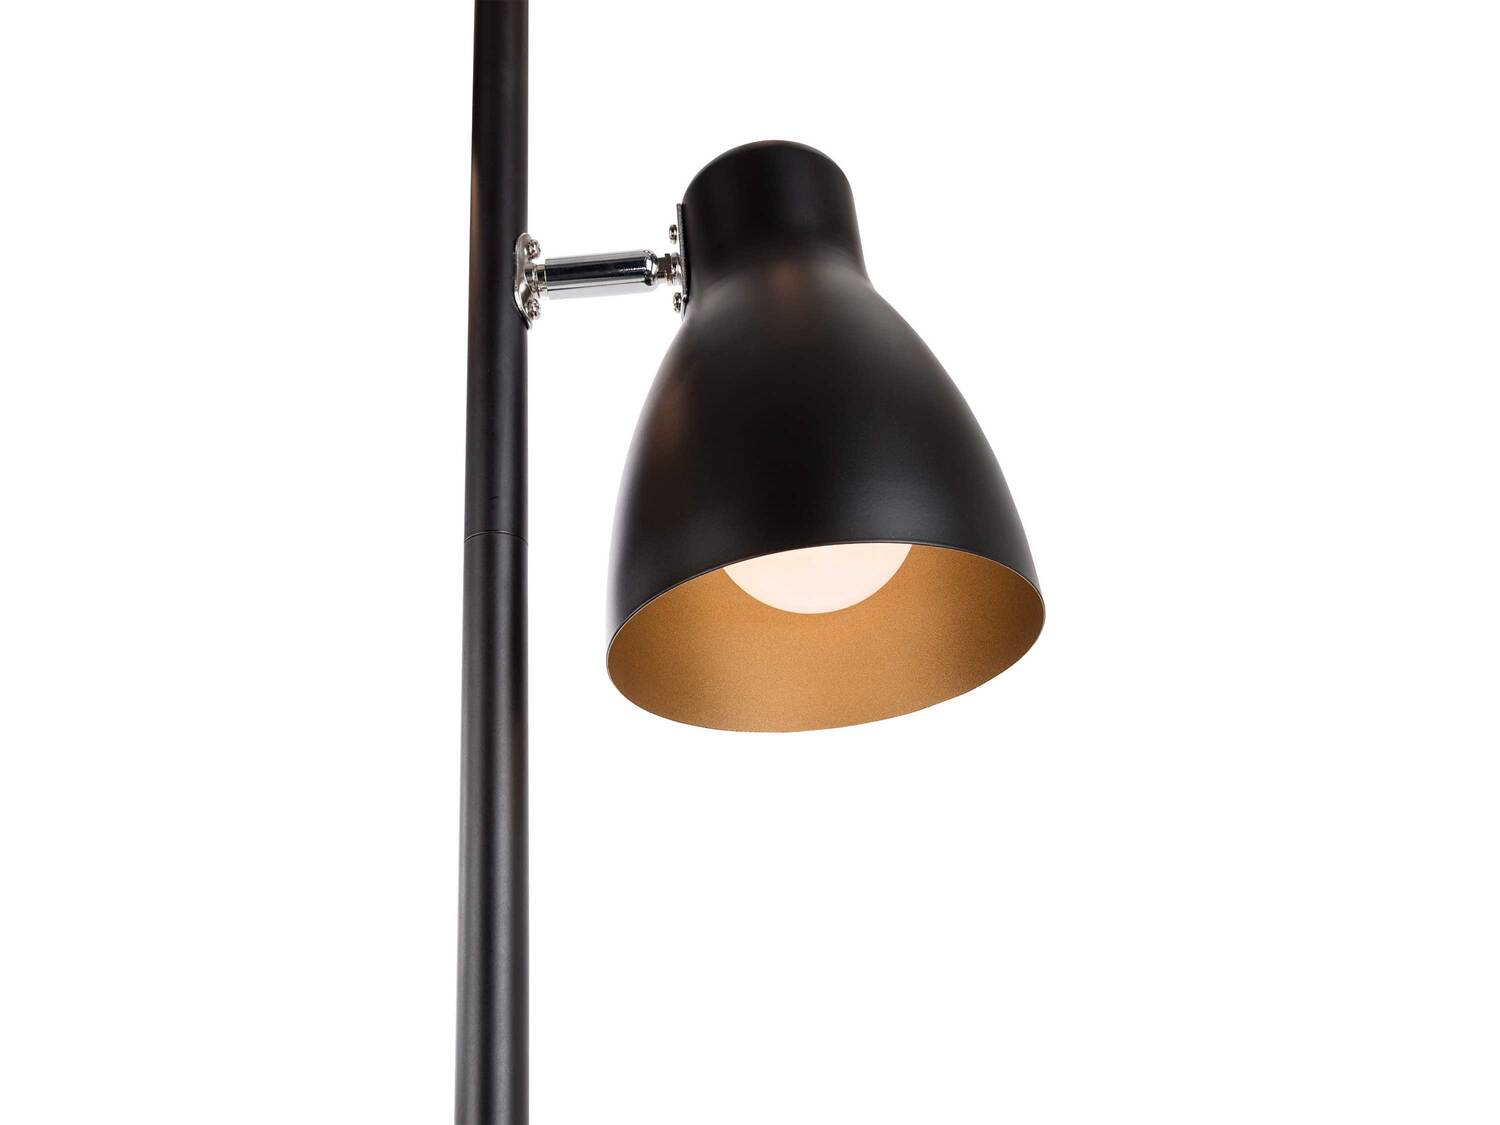 Lampa stojąca LED , cena 69,00 PLN 
- nożny przełącznik kabla sieciowego
- ...